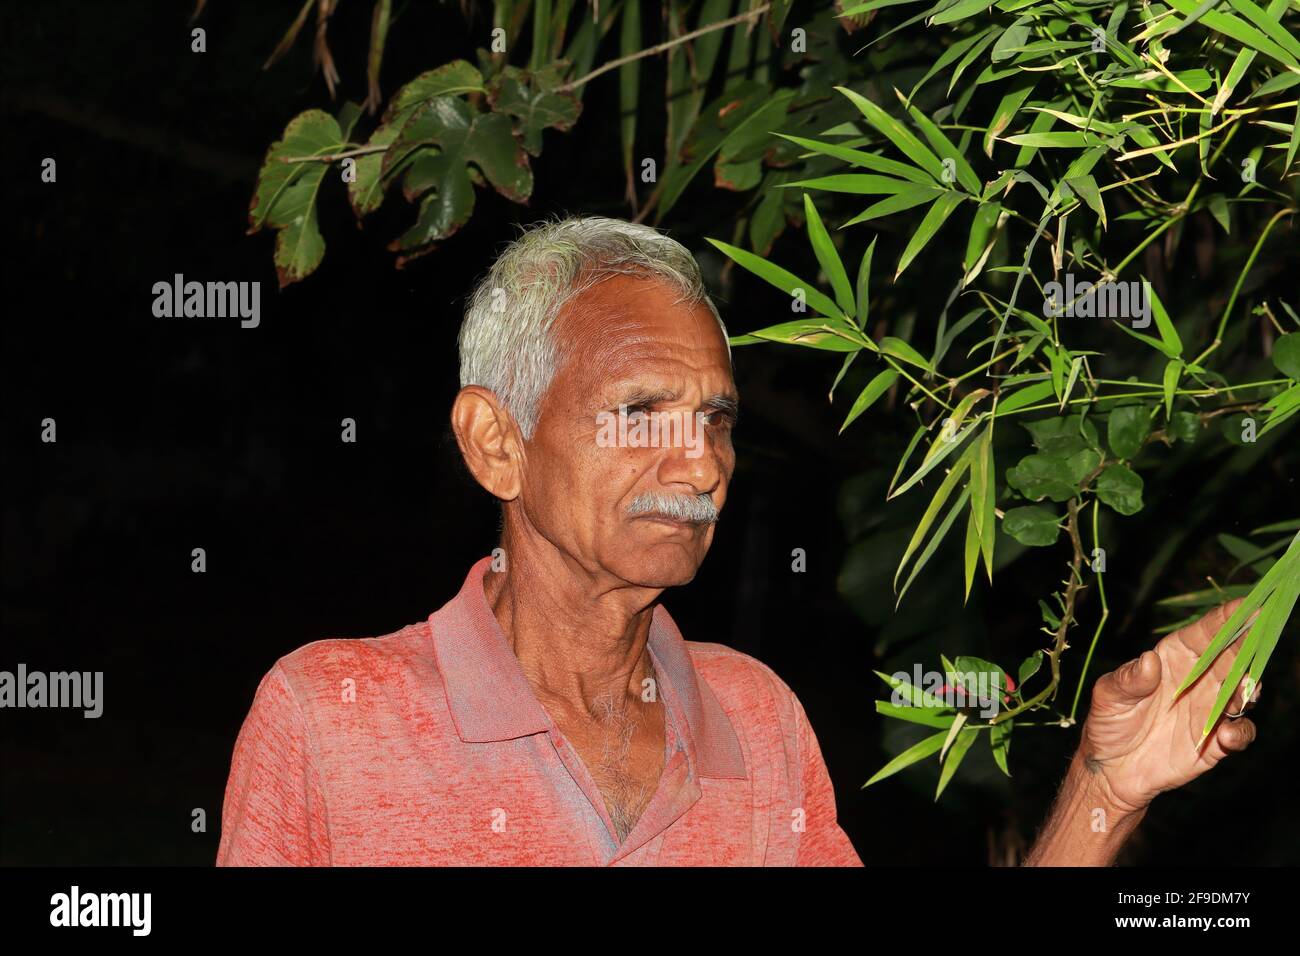 Nahaufnahme Profilansicht Foto von progressiven und wohlhabenden indischen älteren Landwirt Mann. Konzept bis Low-Key-Fotografie Stockfoto